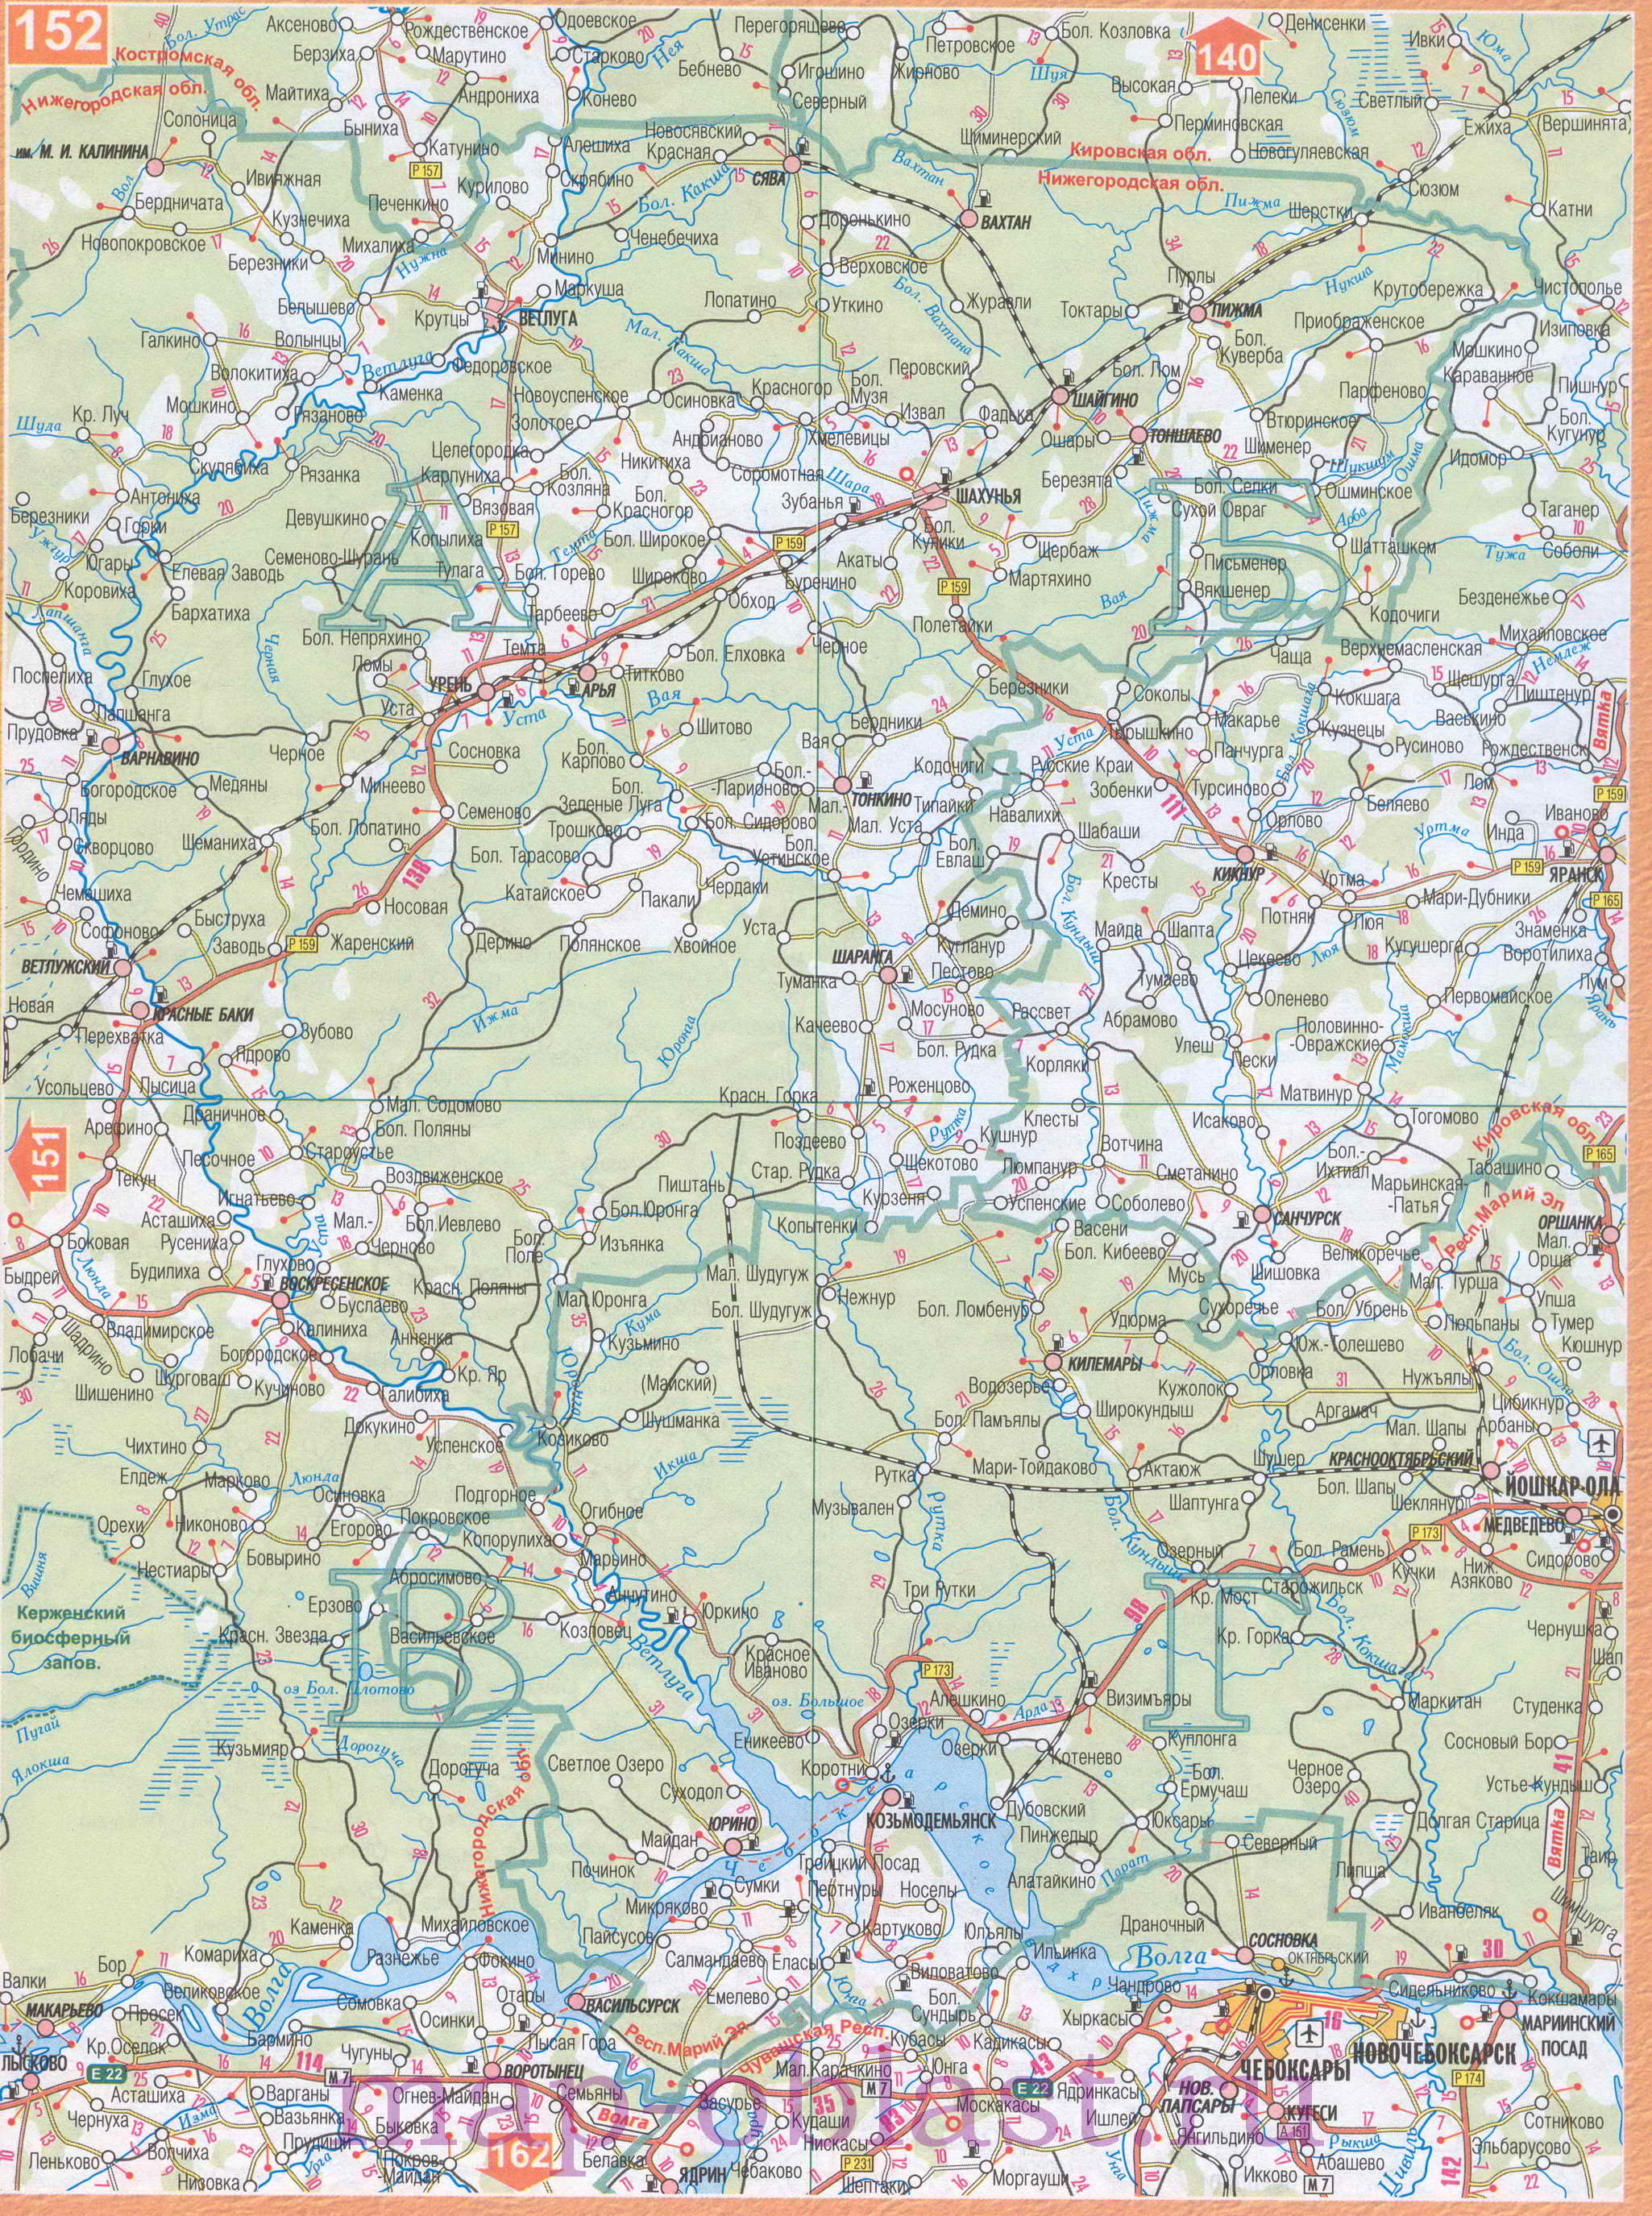 Карта Волго-Вятского экономического района. Подробная карта автодорог Волго-Вятского региона России, C1 - 